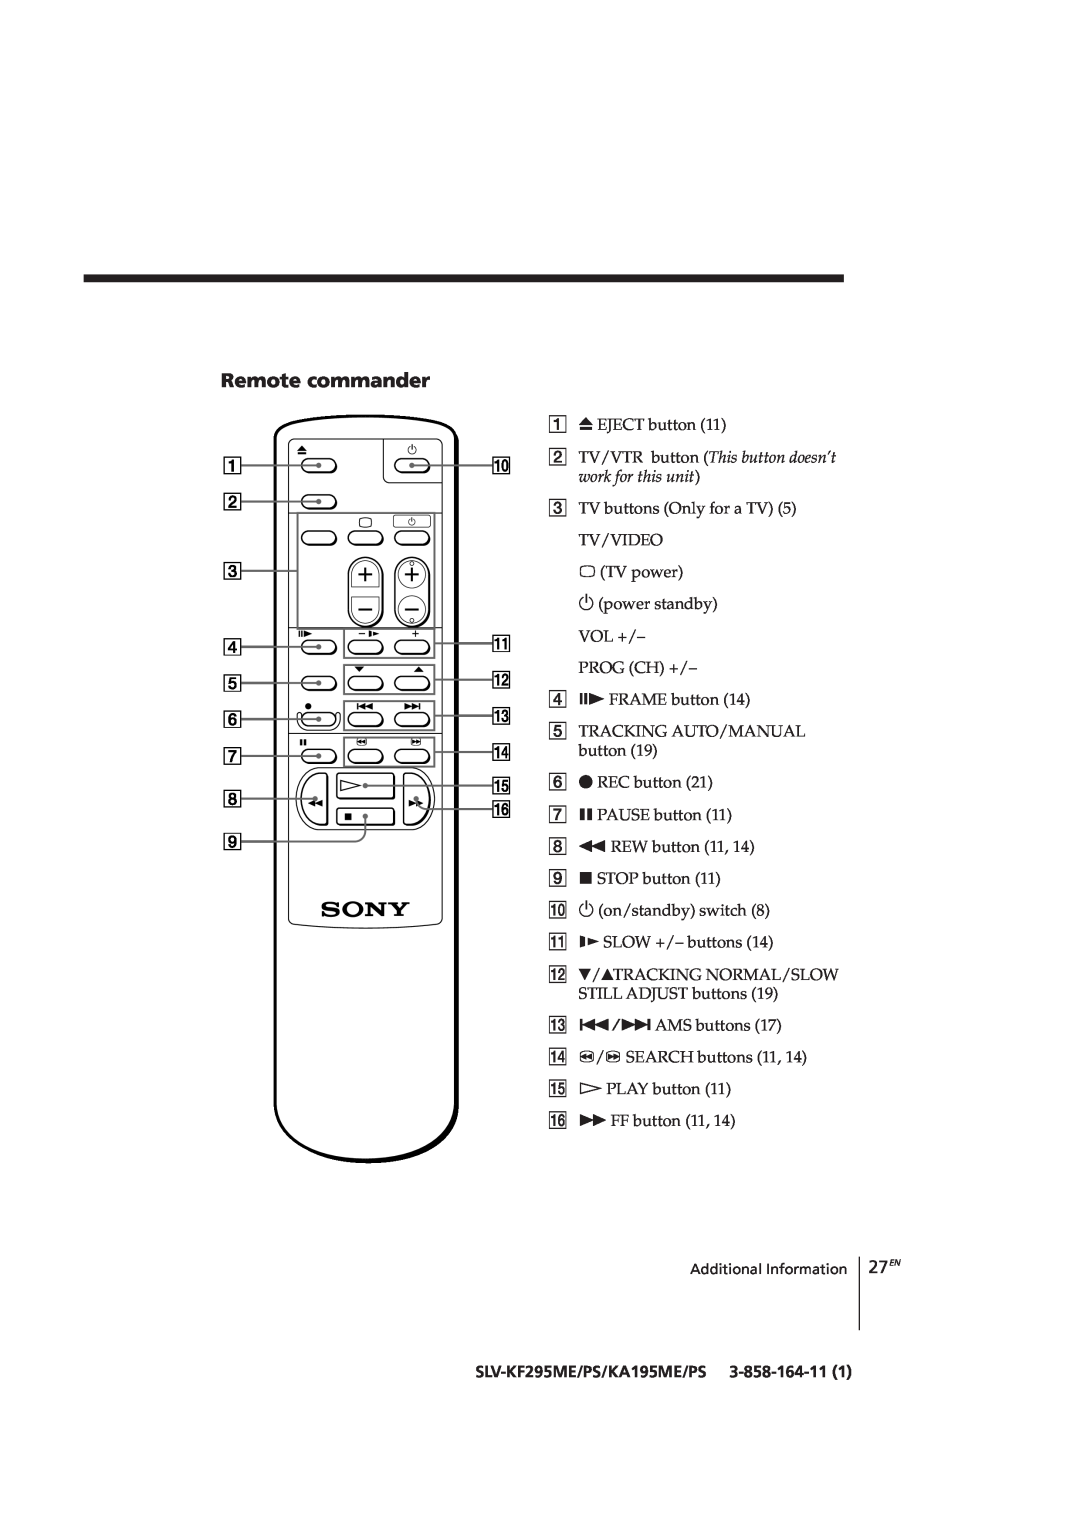 Sony SLV-KA195CH, SLV-KF295CH manual Remote commander, SLV-KF295ME/PS/KA195ME/PS 